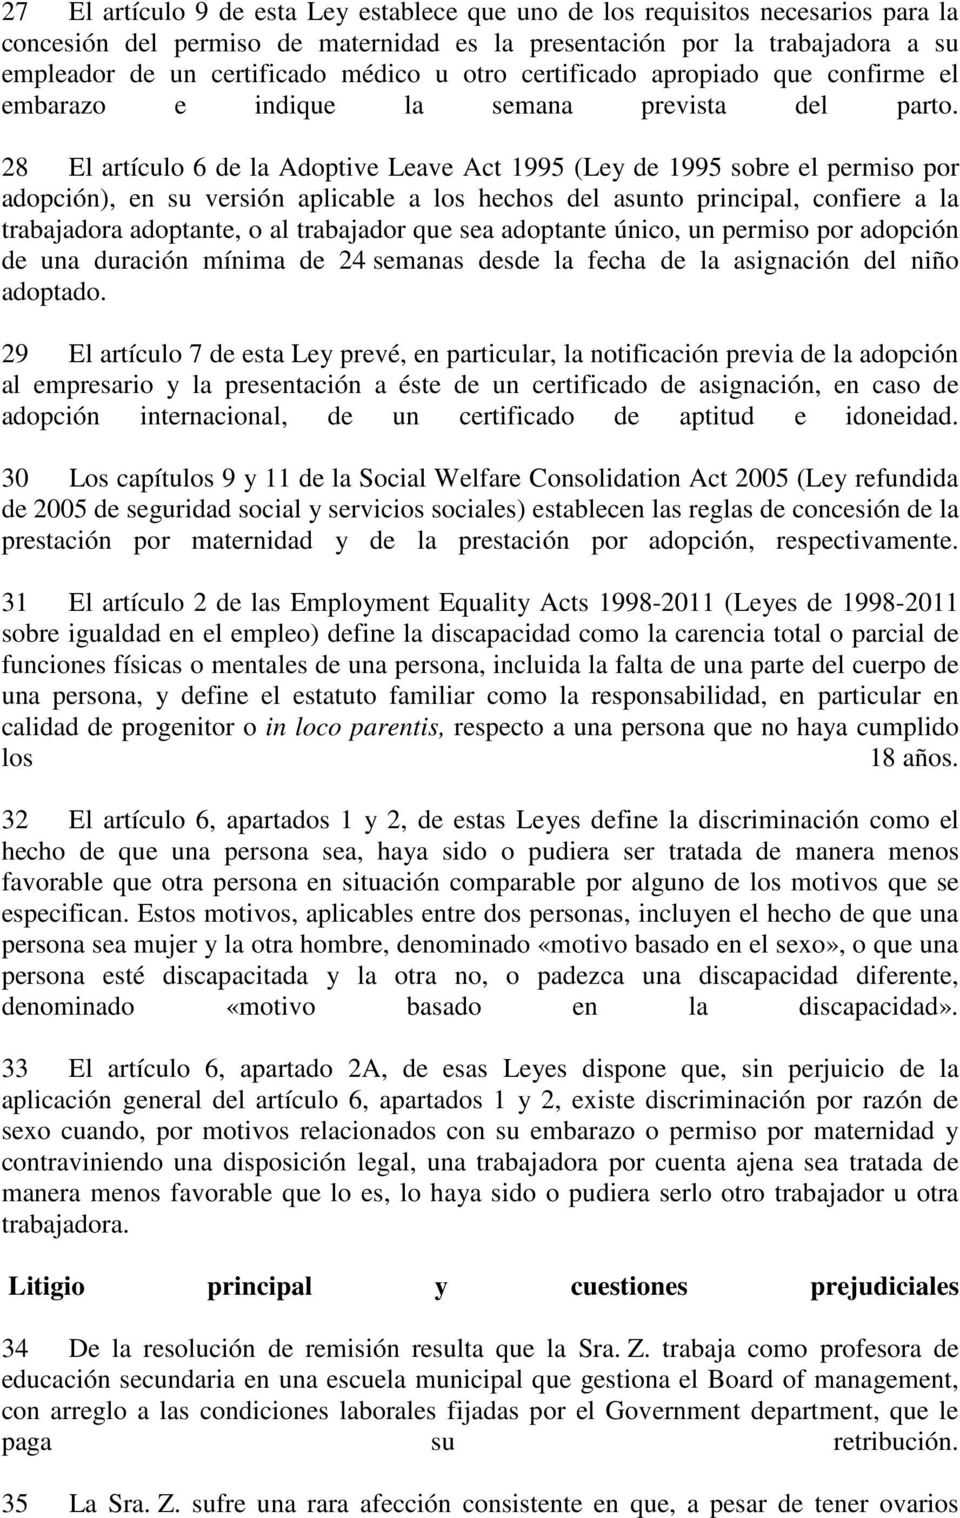 28 El artículo 6 de la Adoptive Leave Act 1995 (Ley de 1995 sobre el permiso por adopción), en su versión aplicable a los hechos del asunto principal, confiere a la trabajadora adoptante, o al